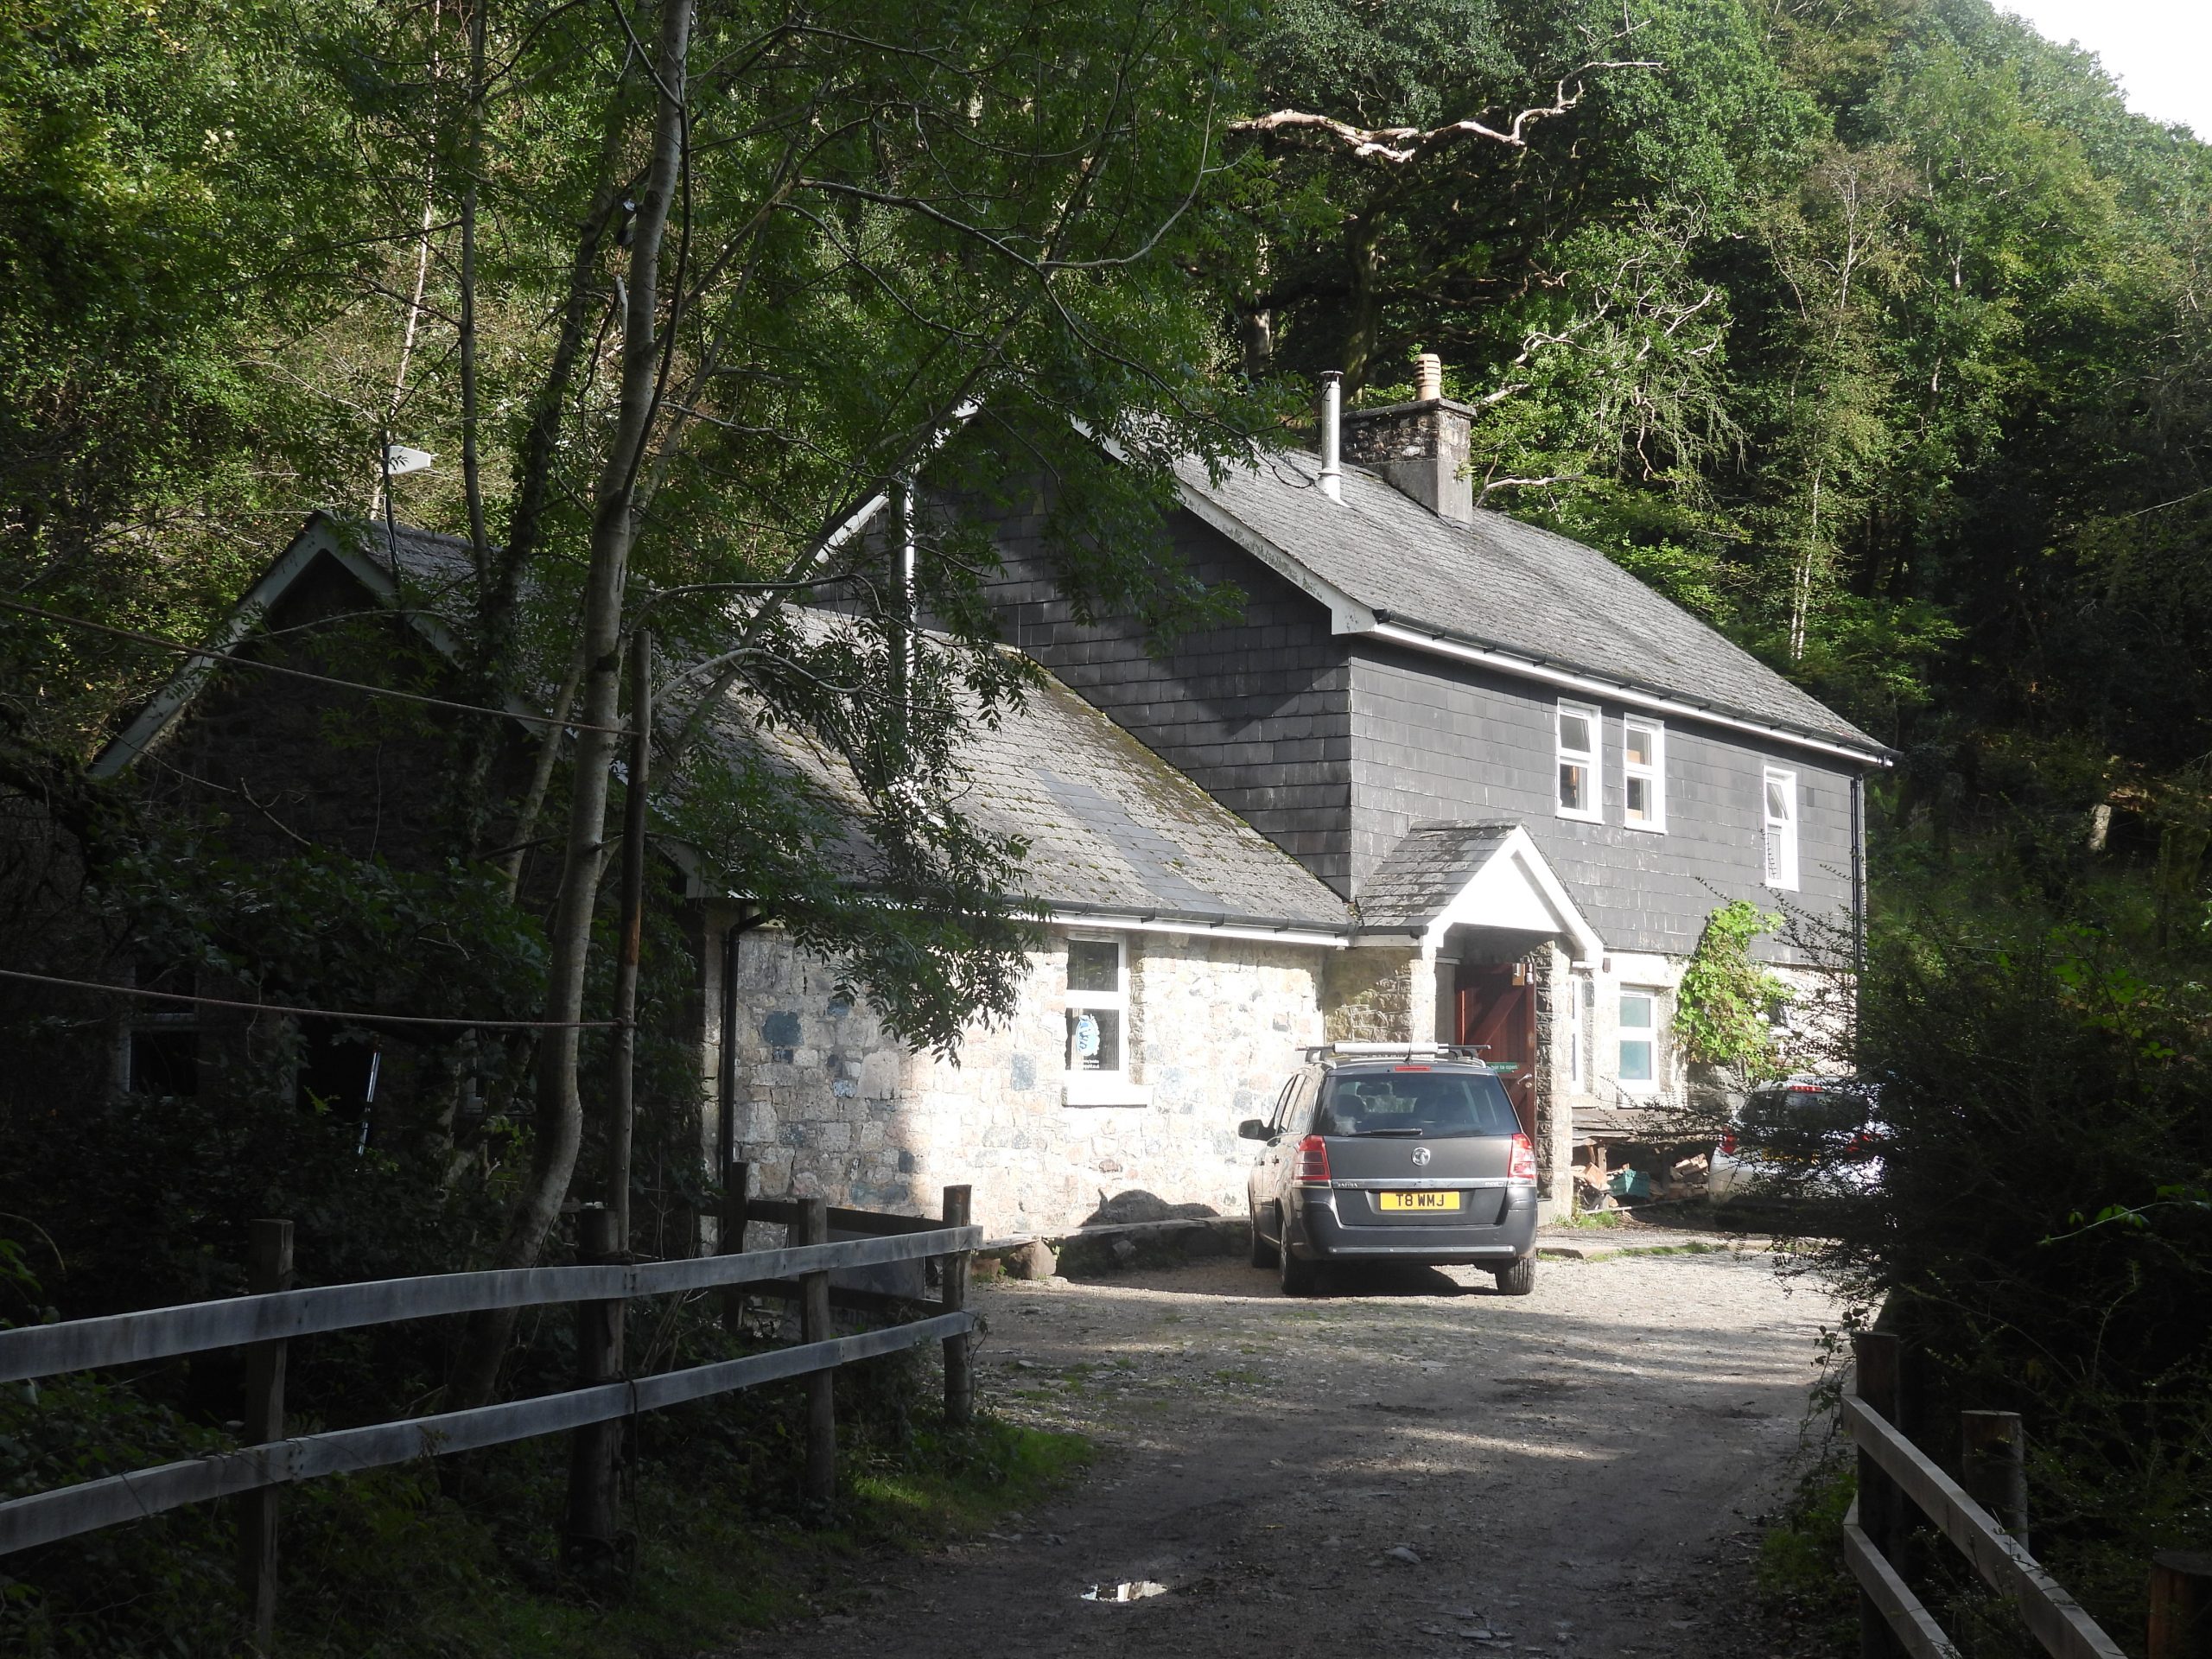 81. Dewerstone Cottage